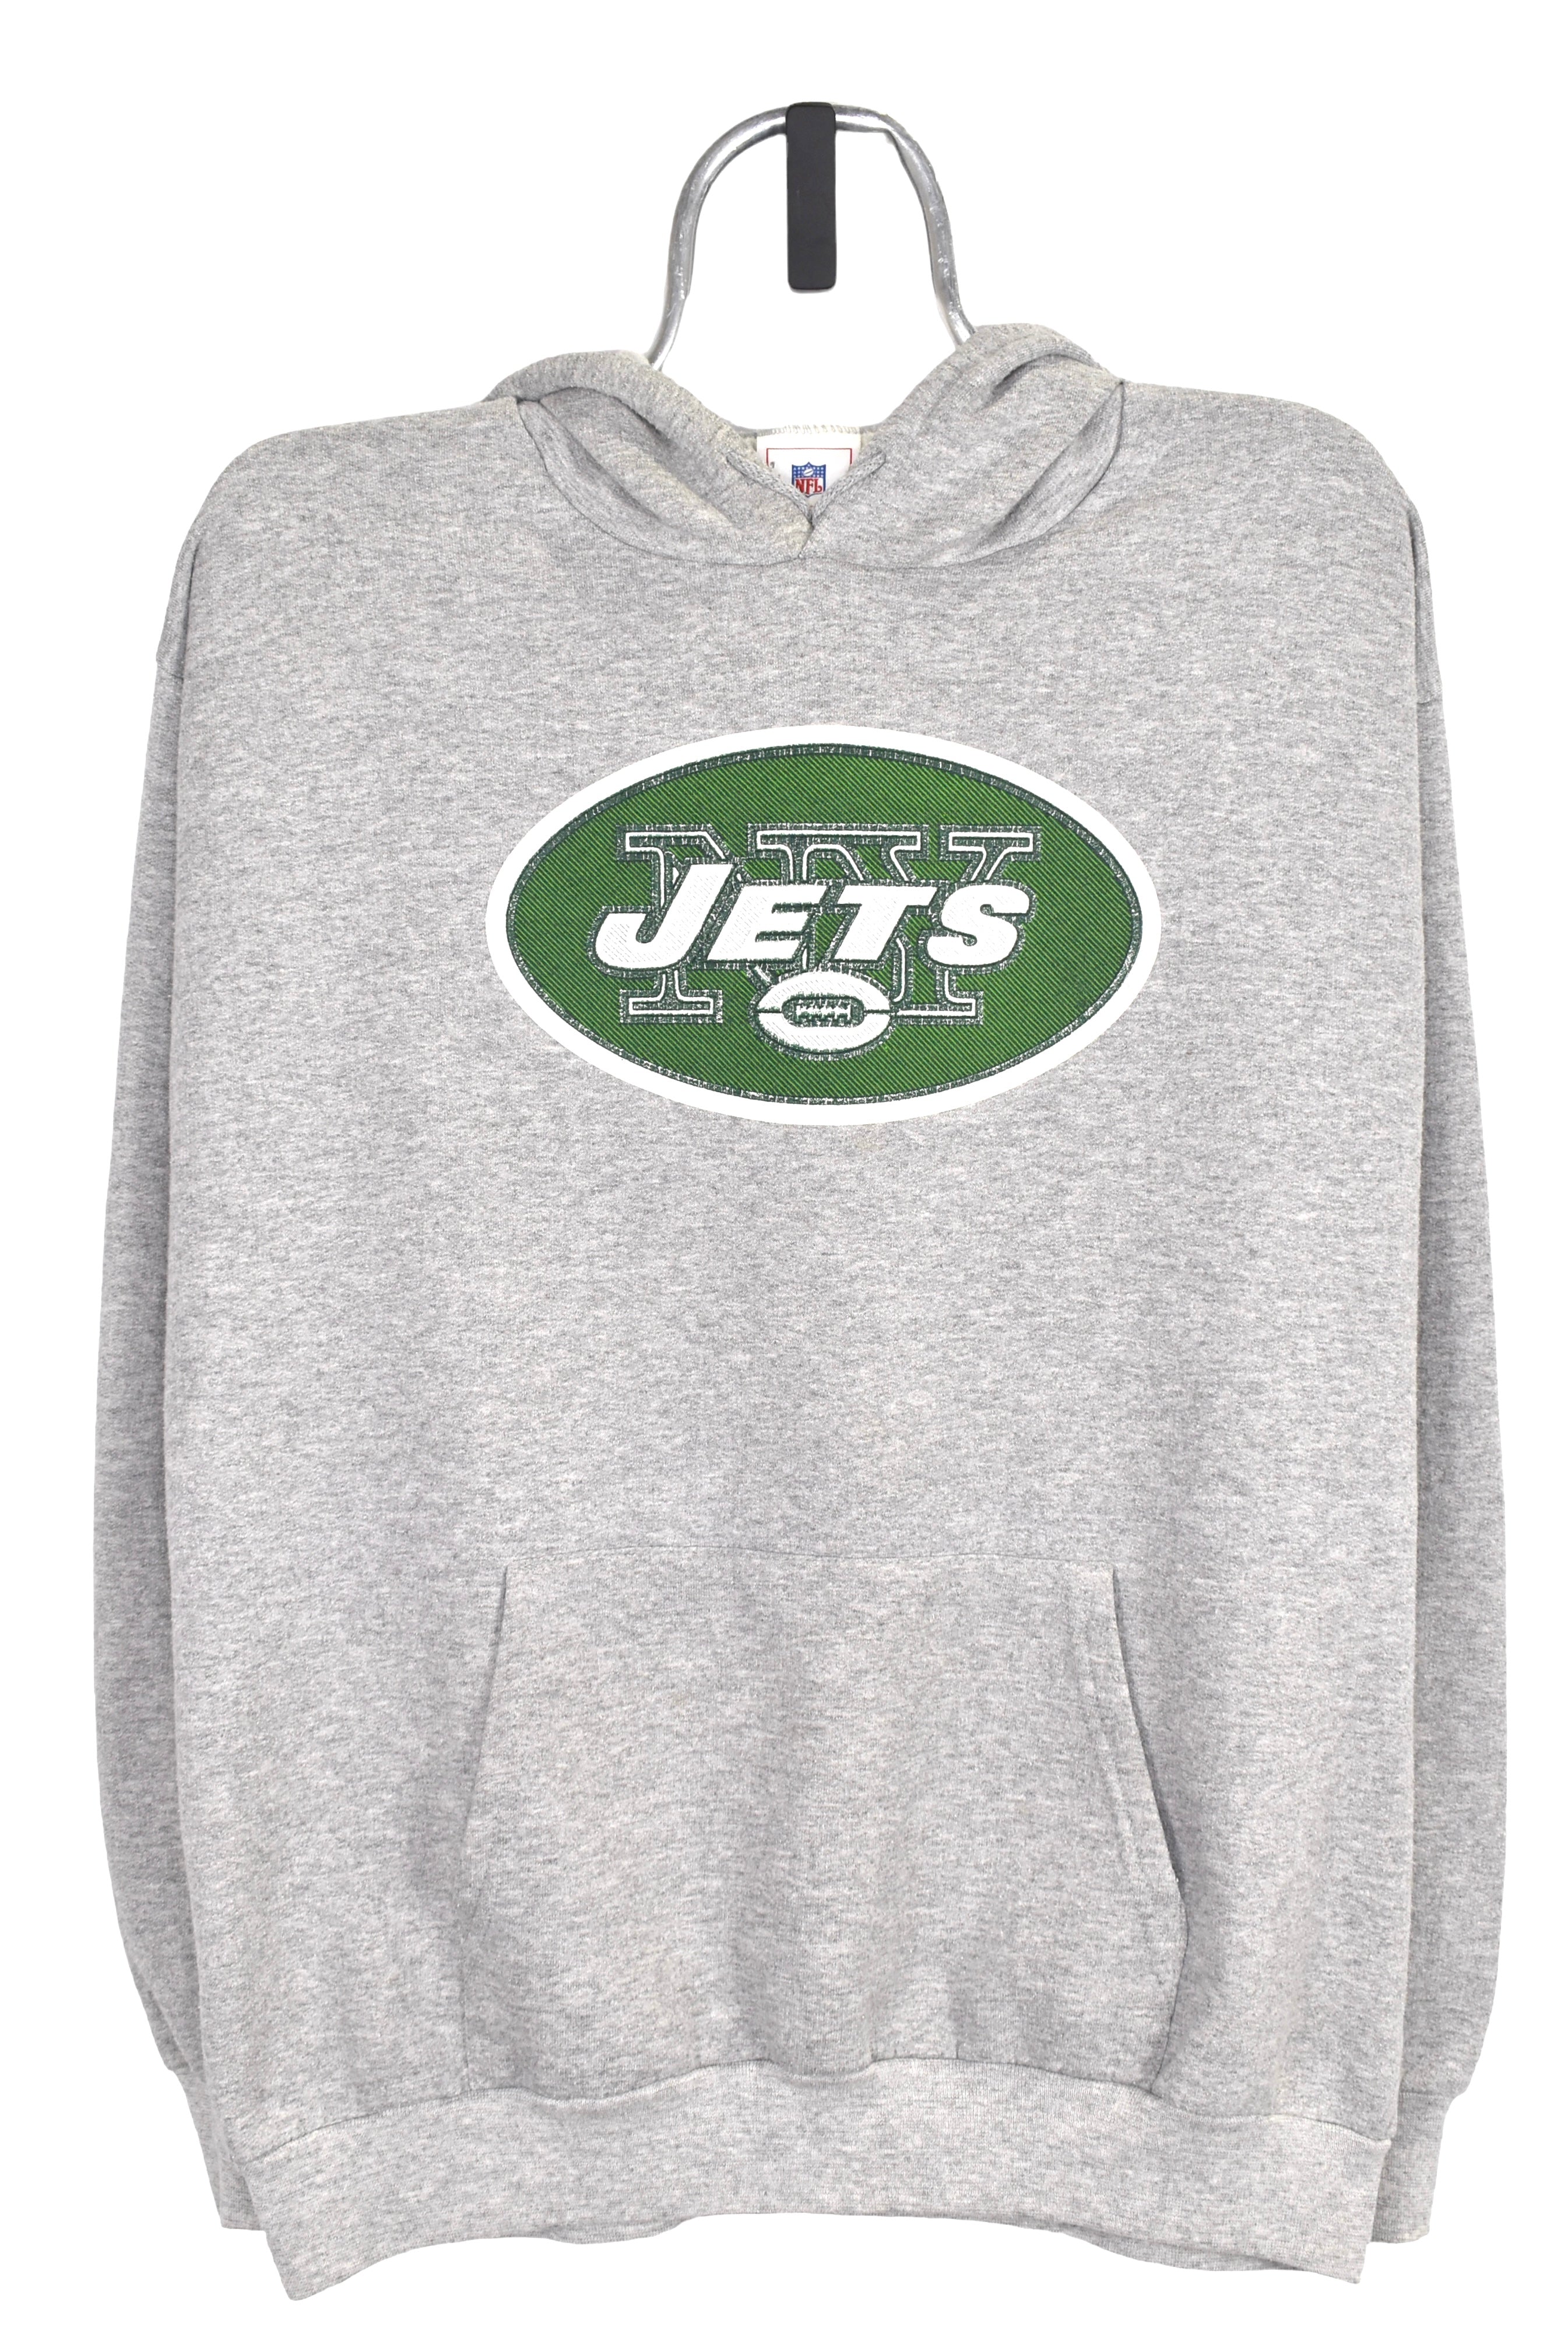 Vintage New York Jets hoodie Large, NFL grey graphic sweatshirt